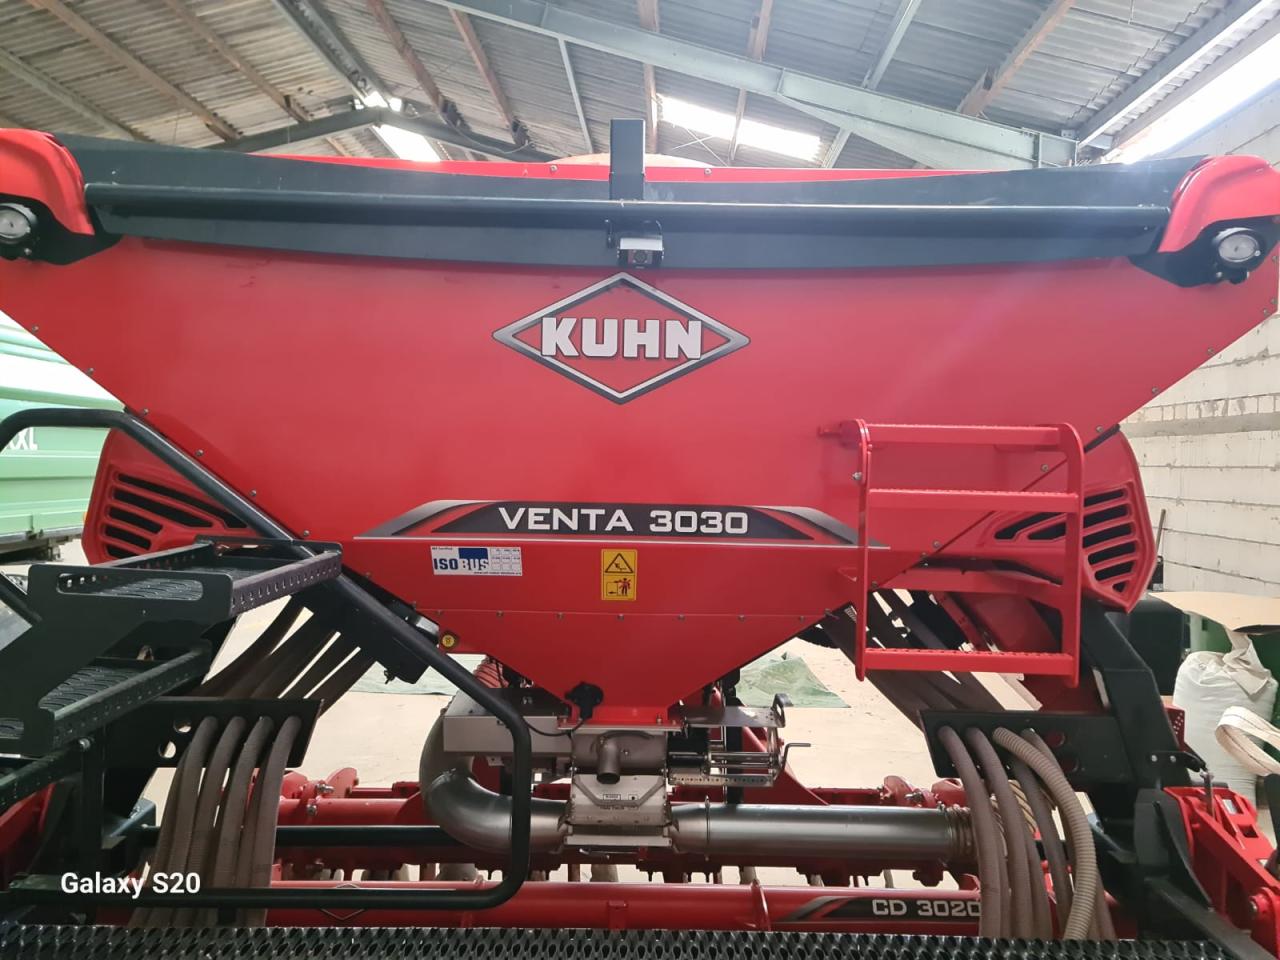 Kuhn VENTA 3030 + CD3020 Inside